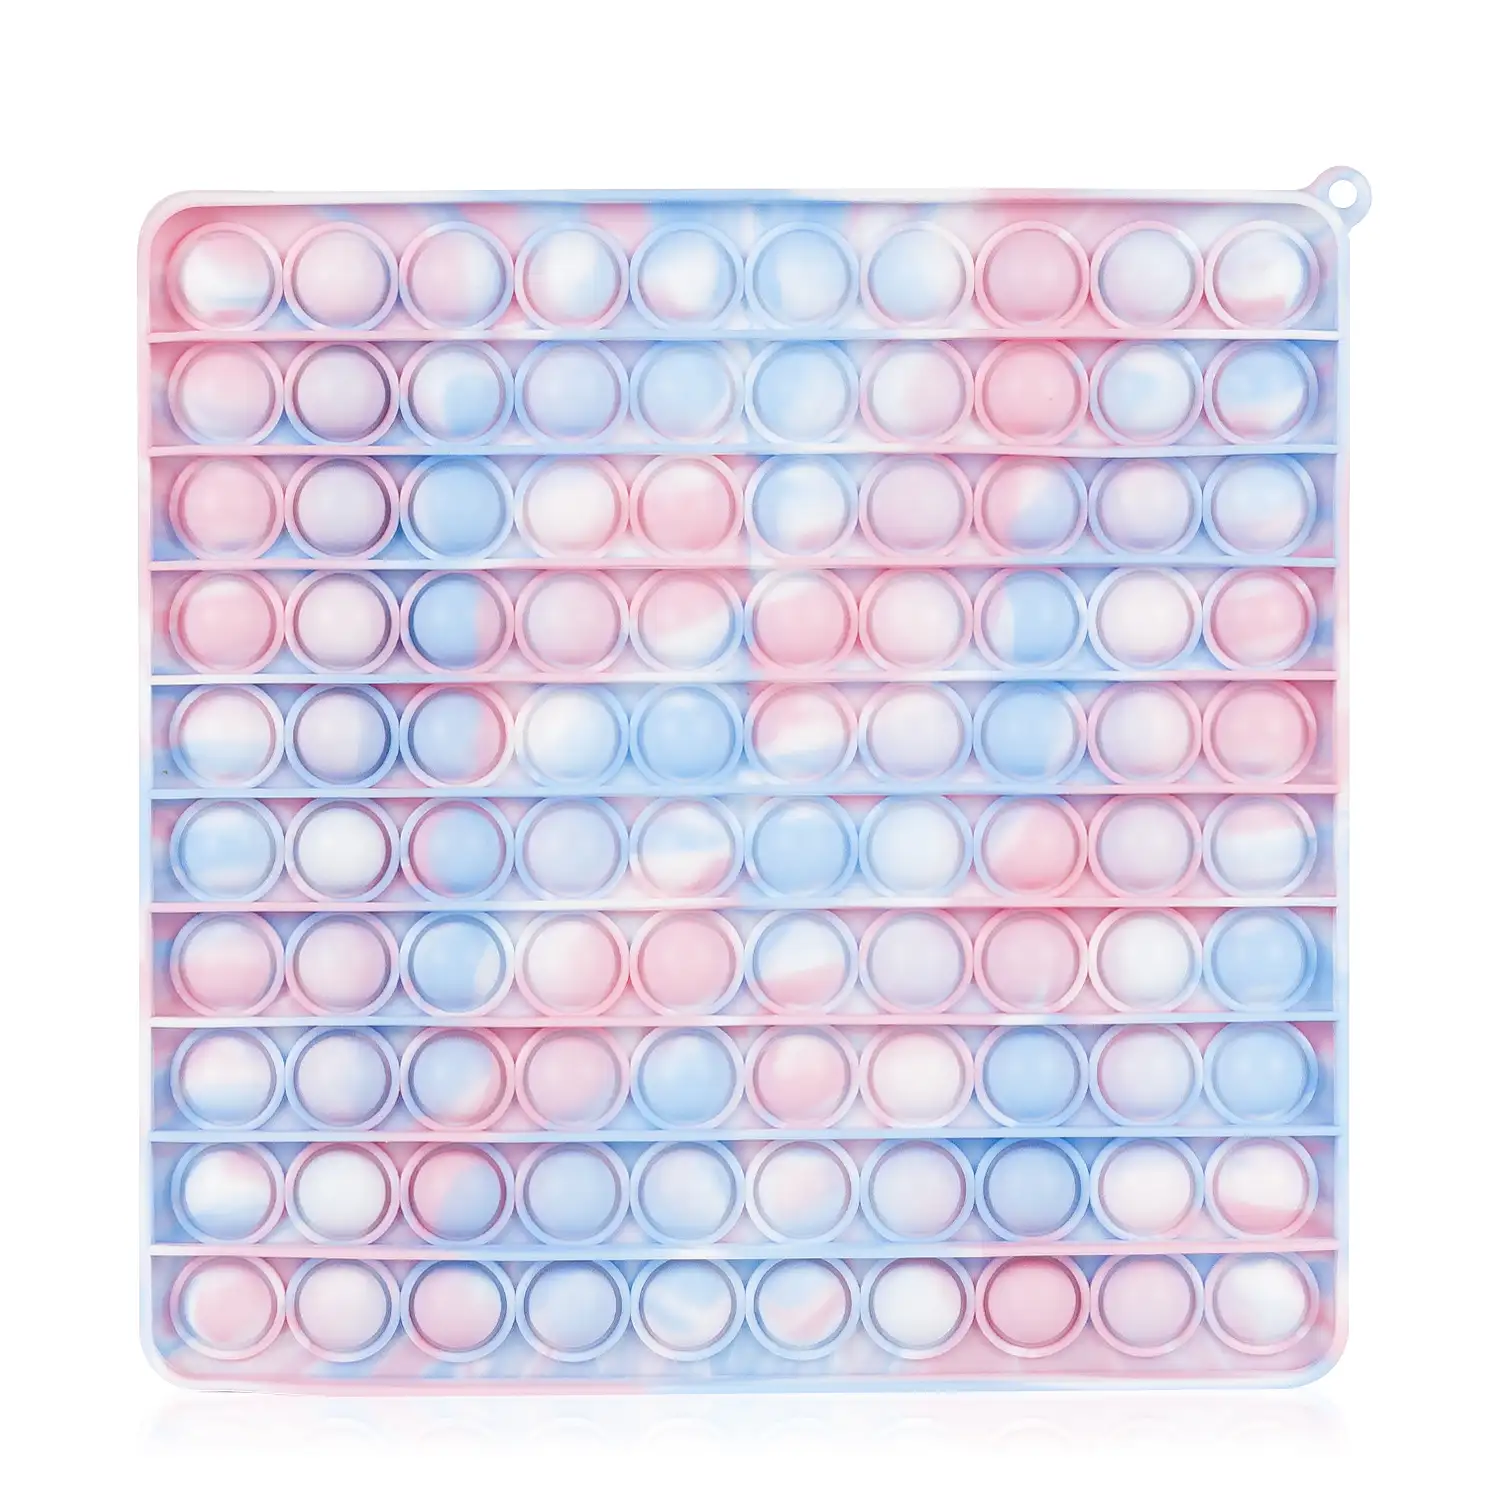 Bubble Pop It, 20cm. cuadrado multicolor. Juguete sensitivo desestresante, burbujas de silicona para apretar y pulsar.